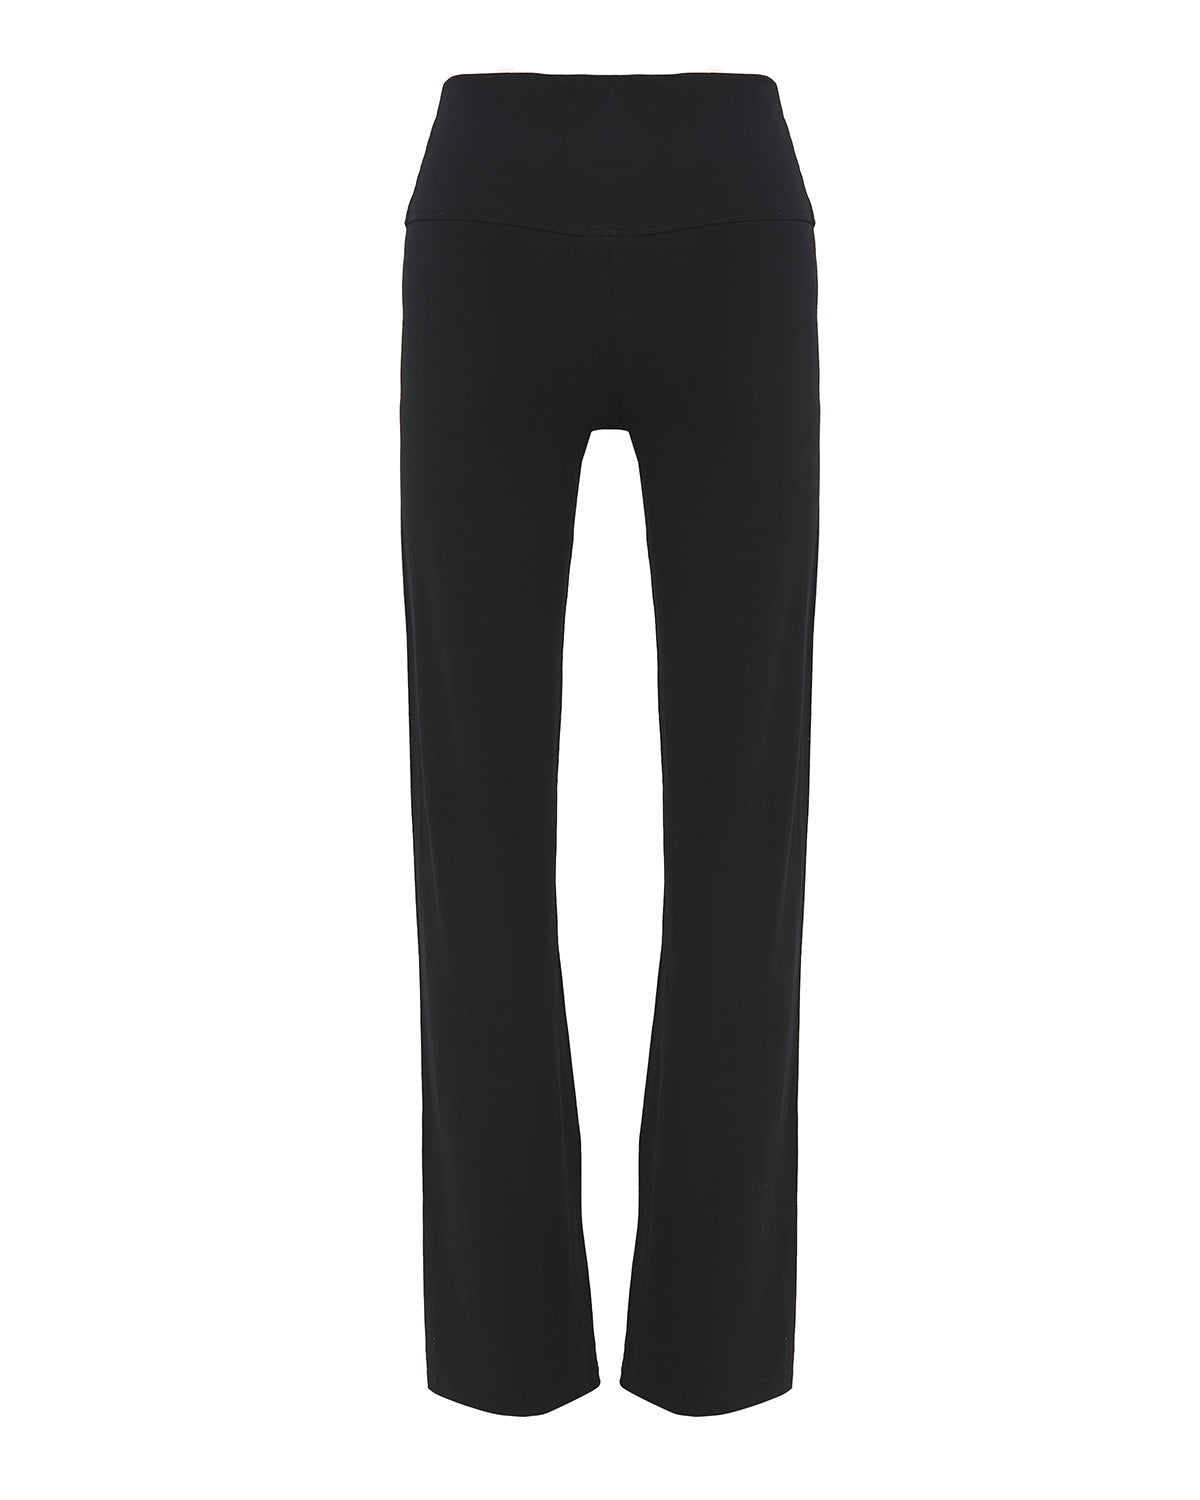 Basic Flare Pants in Black (2M LEFT)